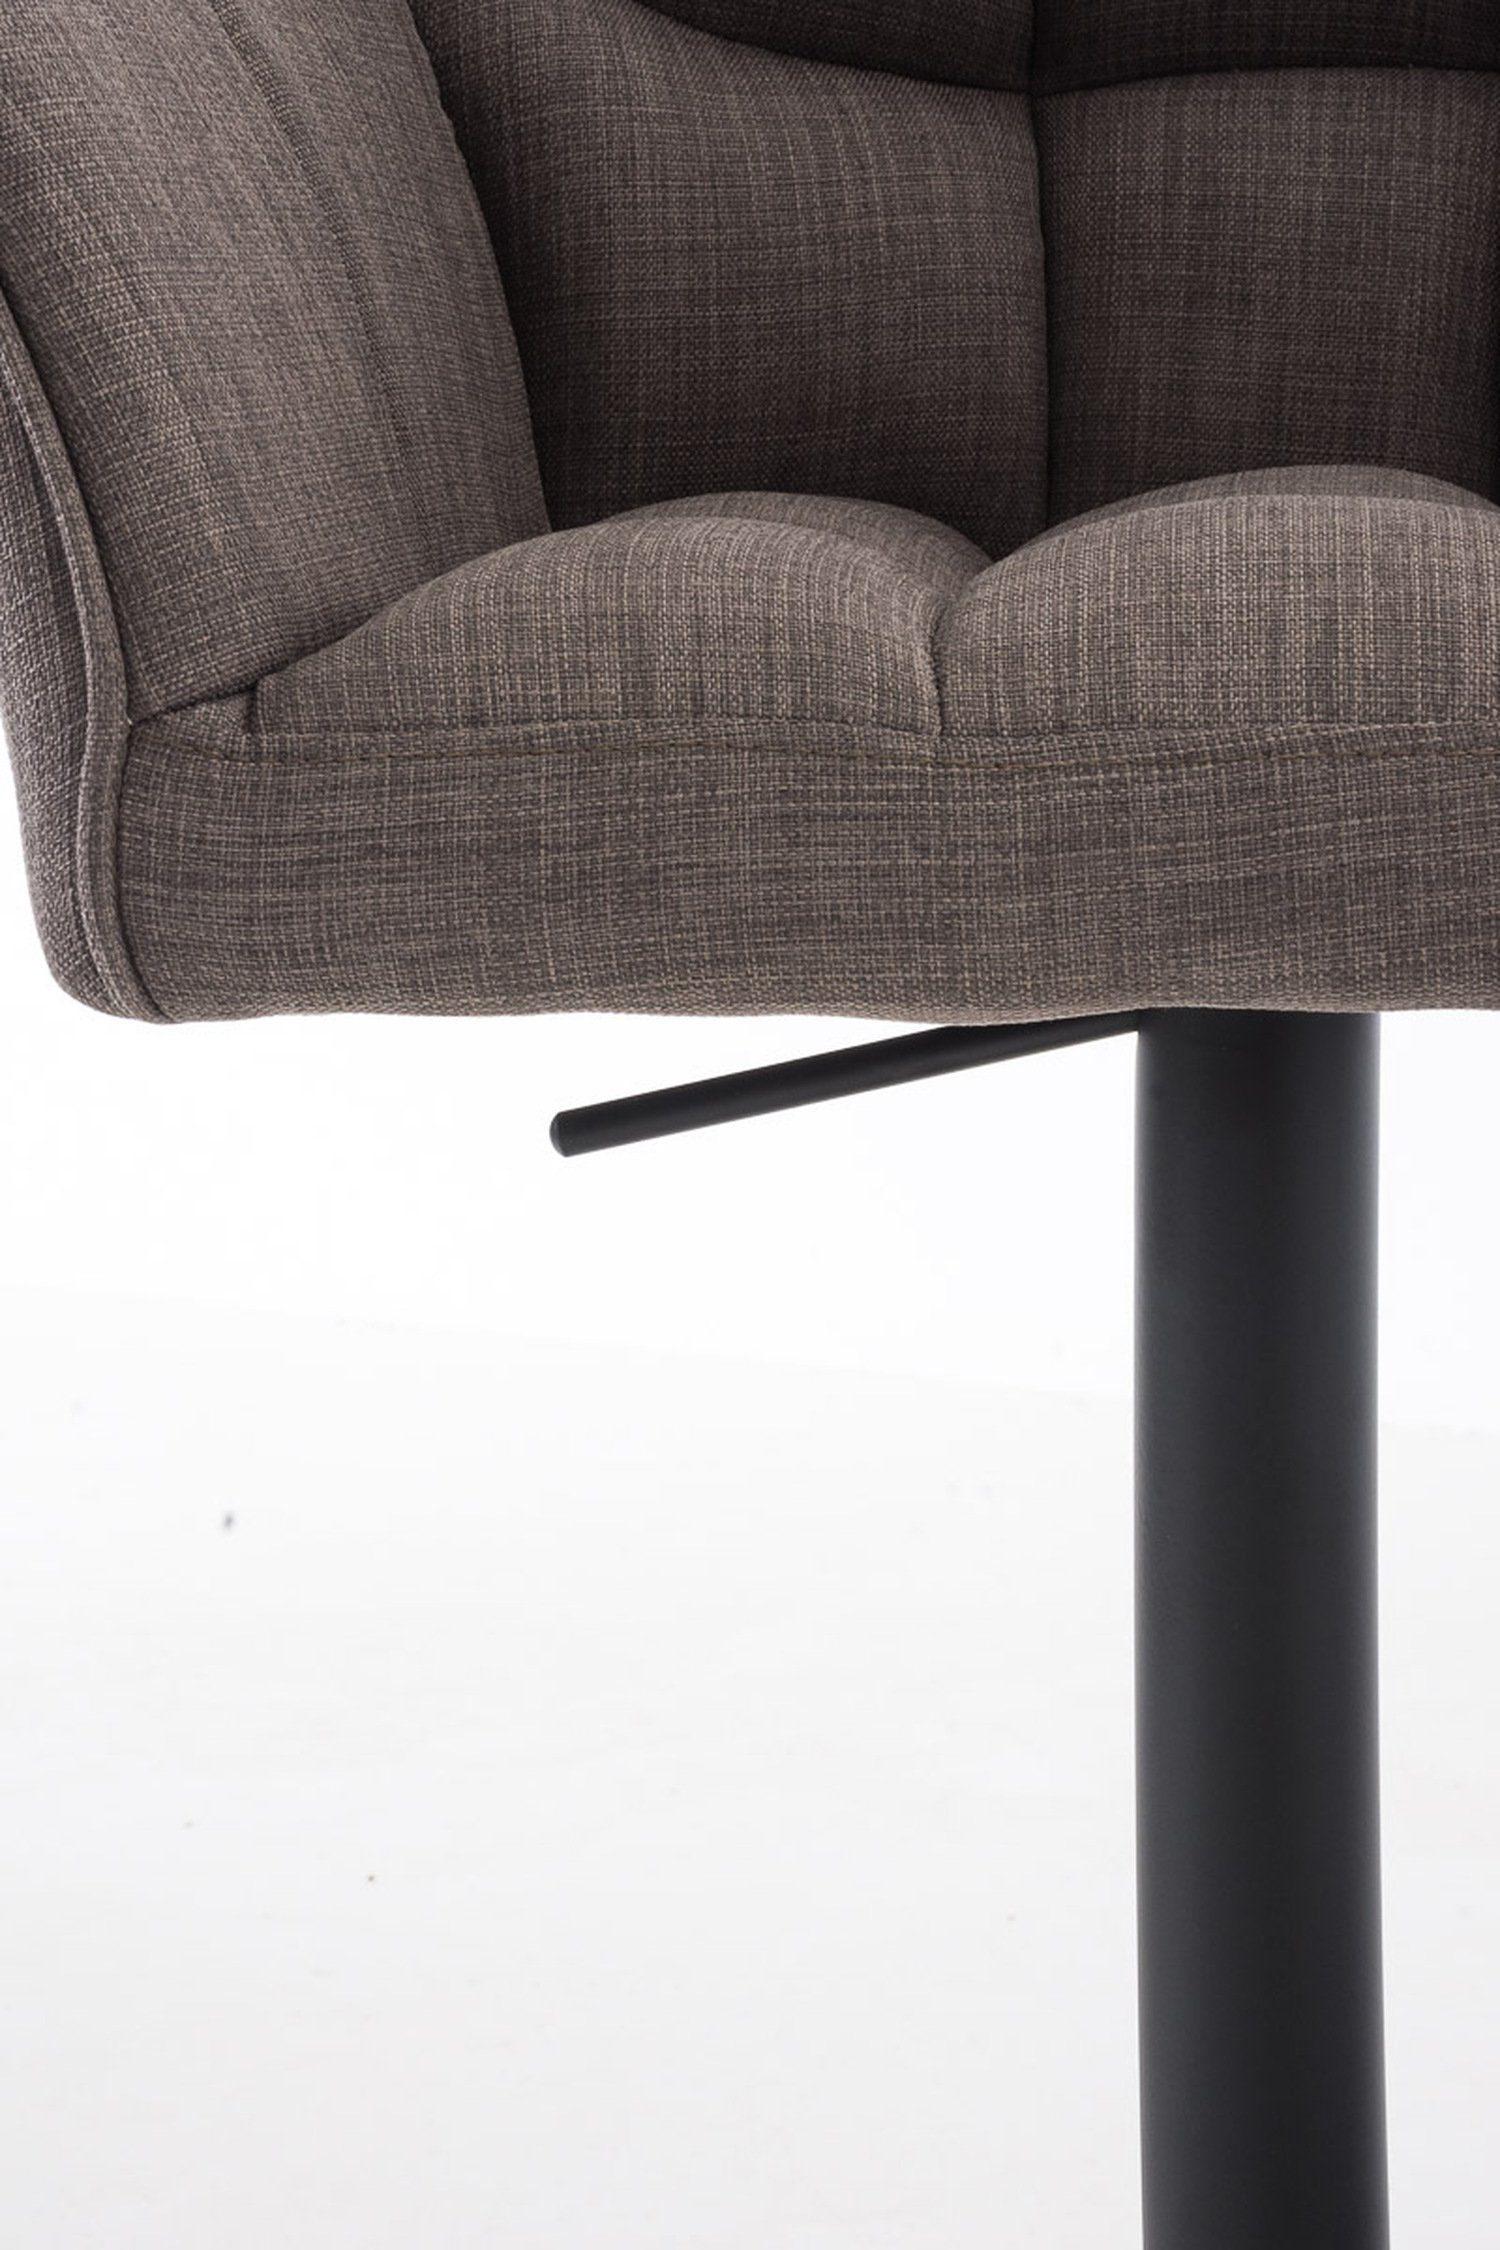 für - drehbar Stoff Sitzfläche: Grau TPFLiving matt Rückenlehne - schwarz & Küche), Hocker Theke Fußstütze Metall Barhocker Damaso - und 360° (mit